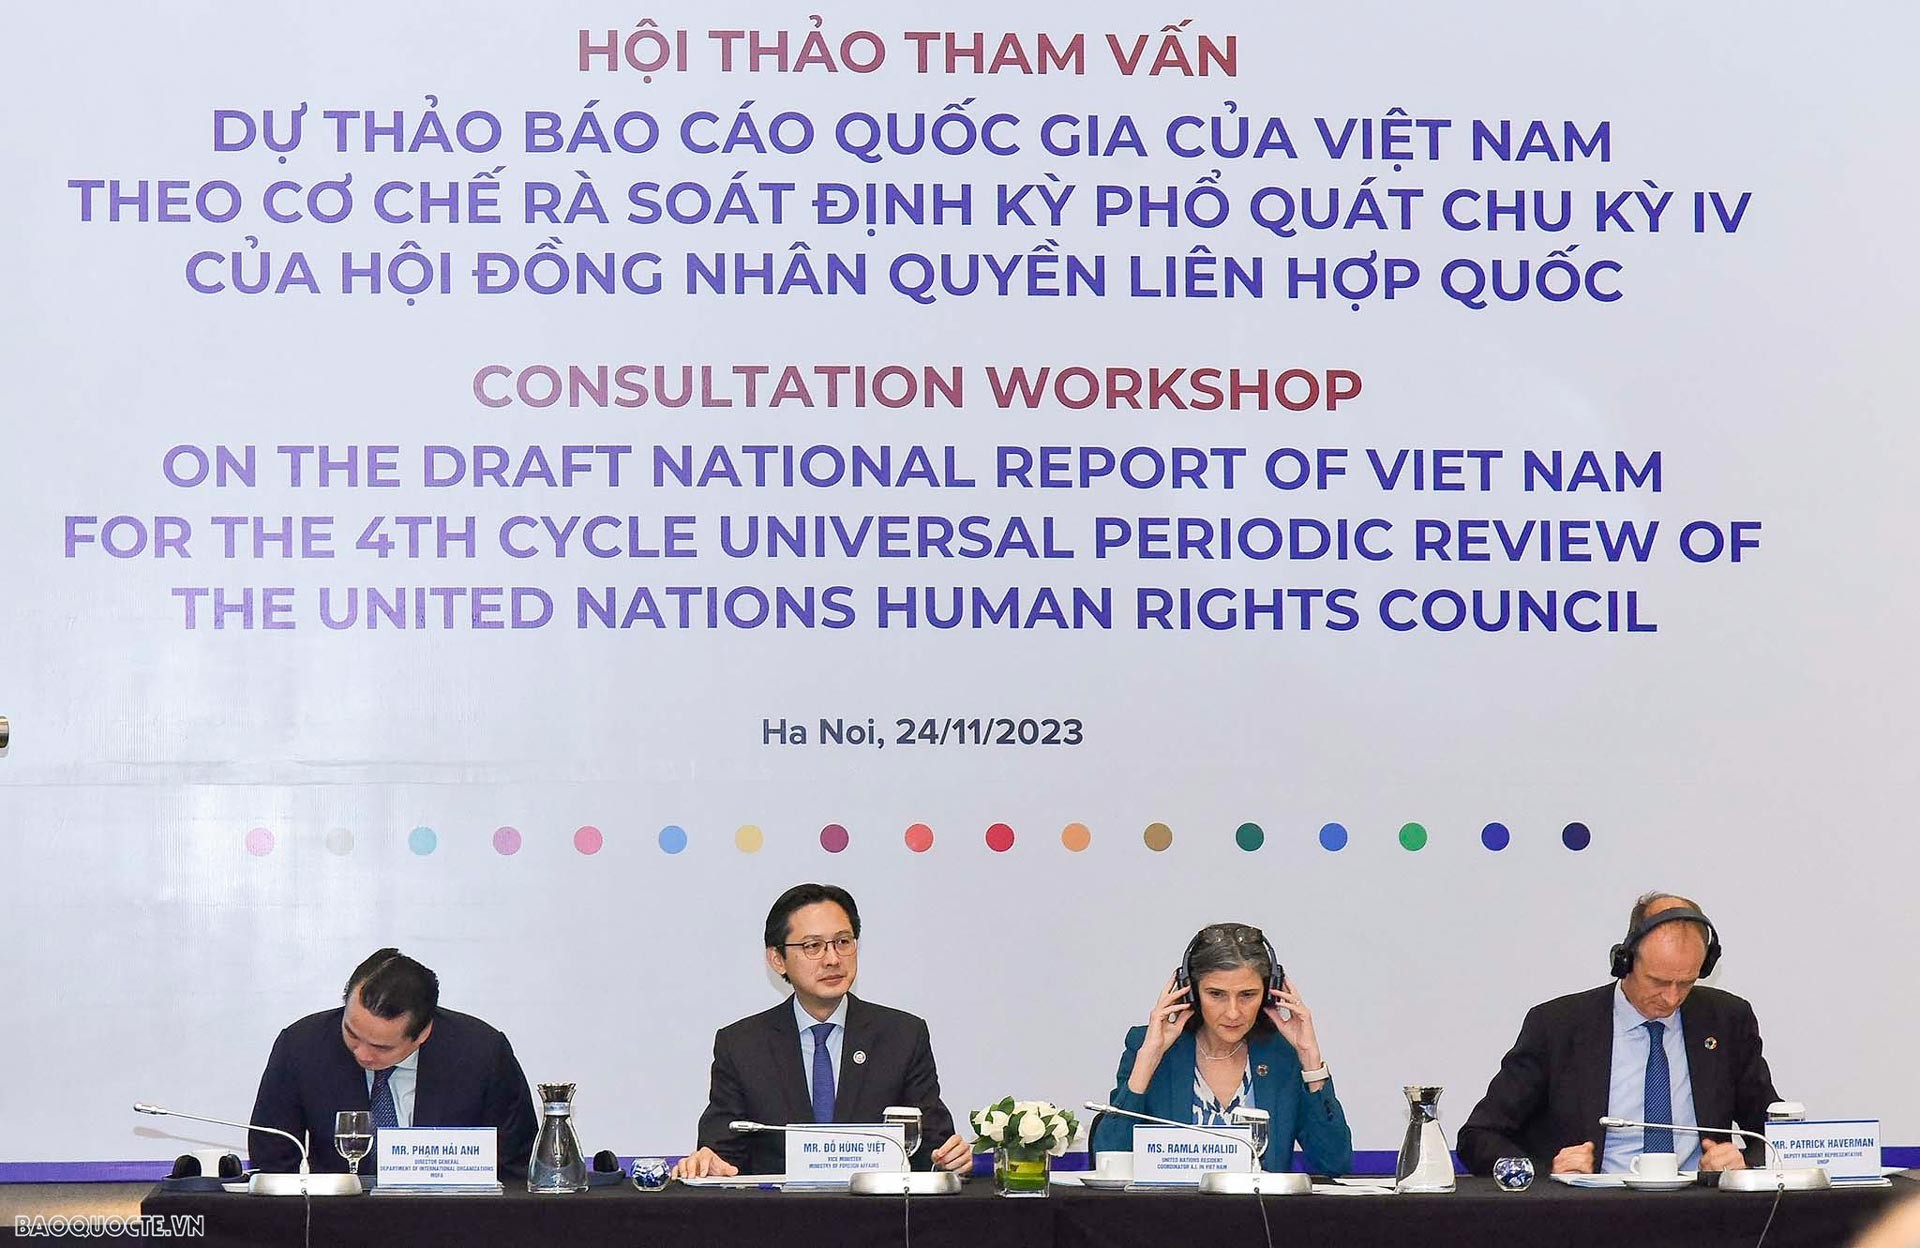 Thứ trưởng Bộ Ngoại giao Đỗ Hùng Việt chủ trì Hội thảo quốc tế tham vấn dự thảo Báo cáo quốc gia theo cơ chế UPR chu kỳ IV của Hội đồng Nhân quyền Liên hợp quốc do Bộ Ngoại giao và Chương trình phát triển Liên hợp quốc (UNDP) tổ chức tại Hà Nội, ngày 24/1